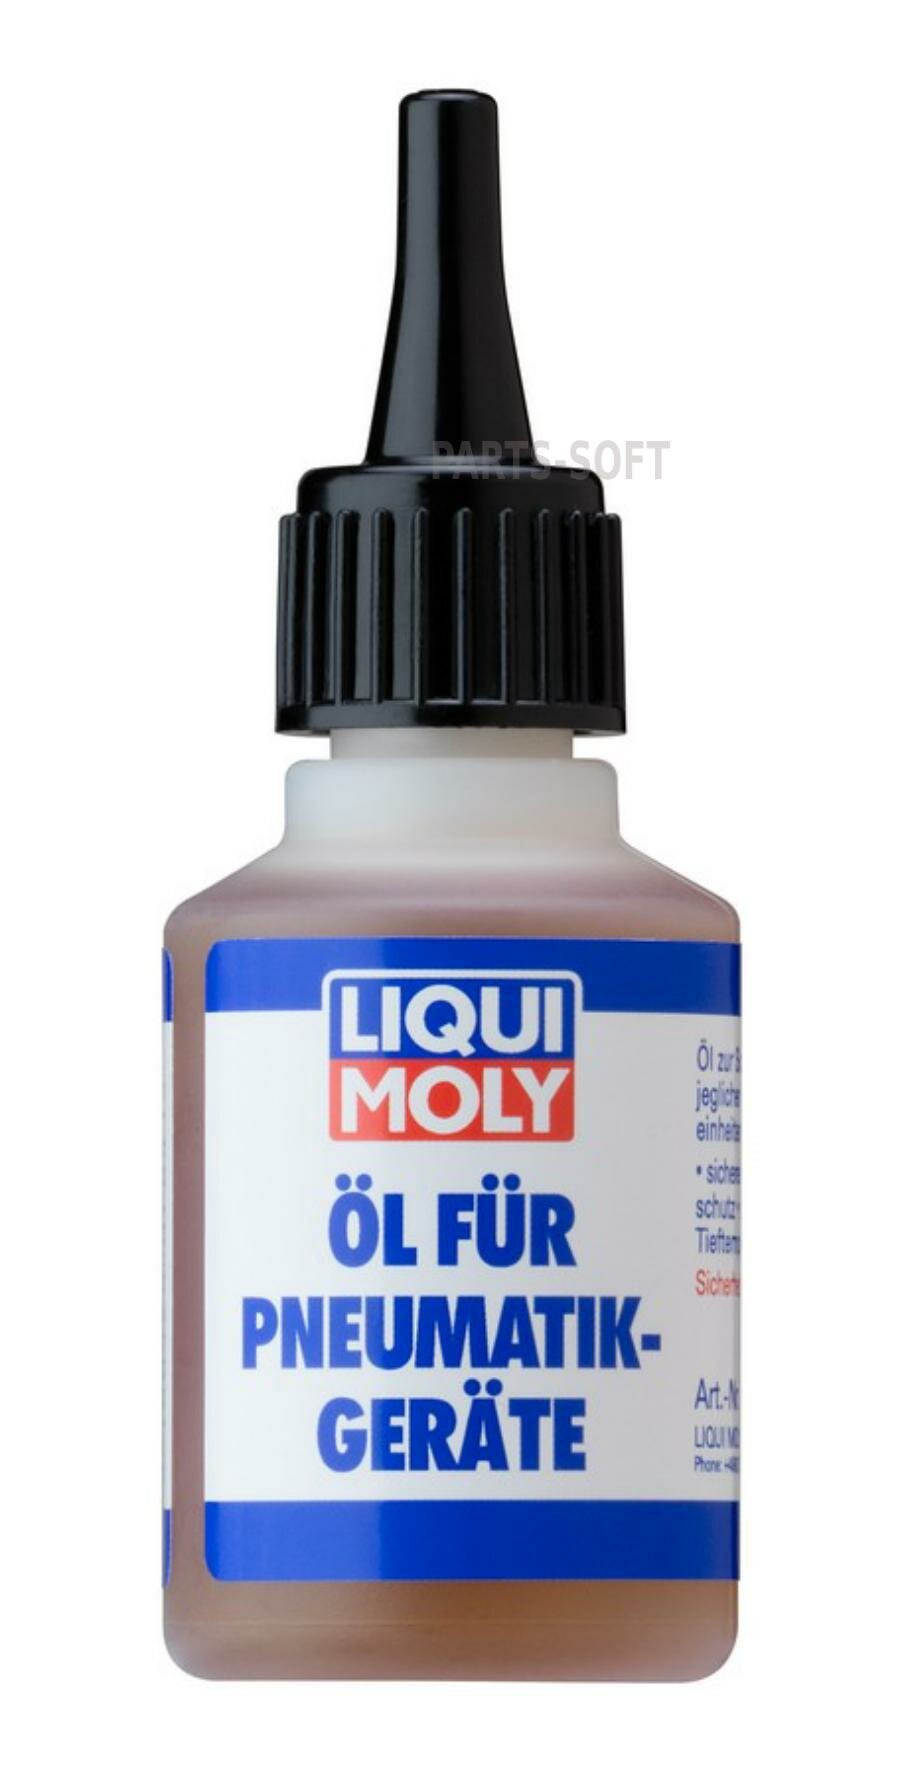 LIQUI MOLY 7841 Масло Инструментальное LIQUI MOLY Oil fur Pneumatikgerate Минеральное 0.05л.